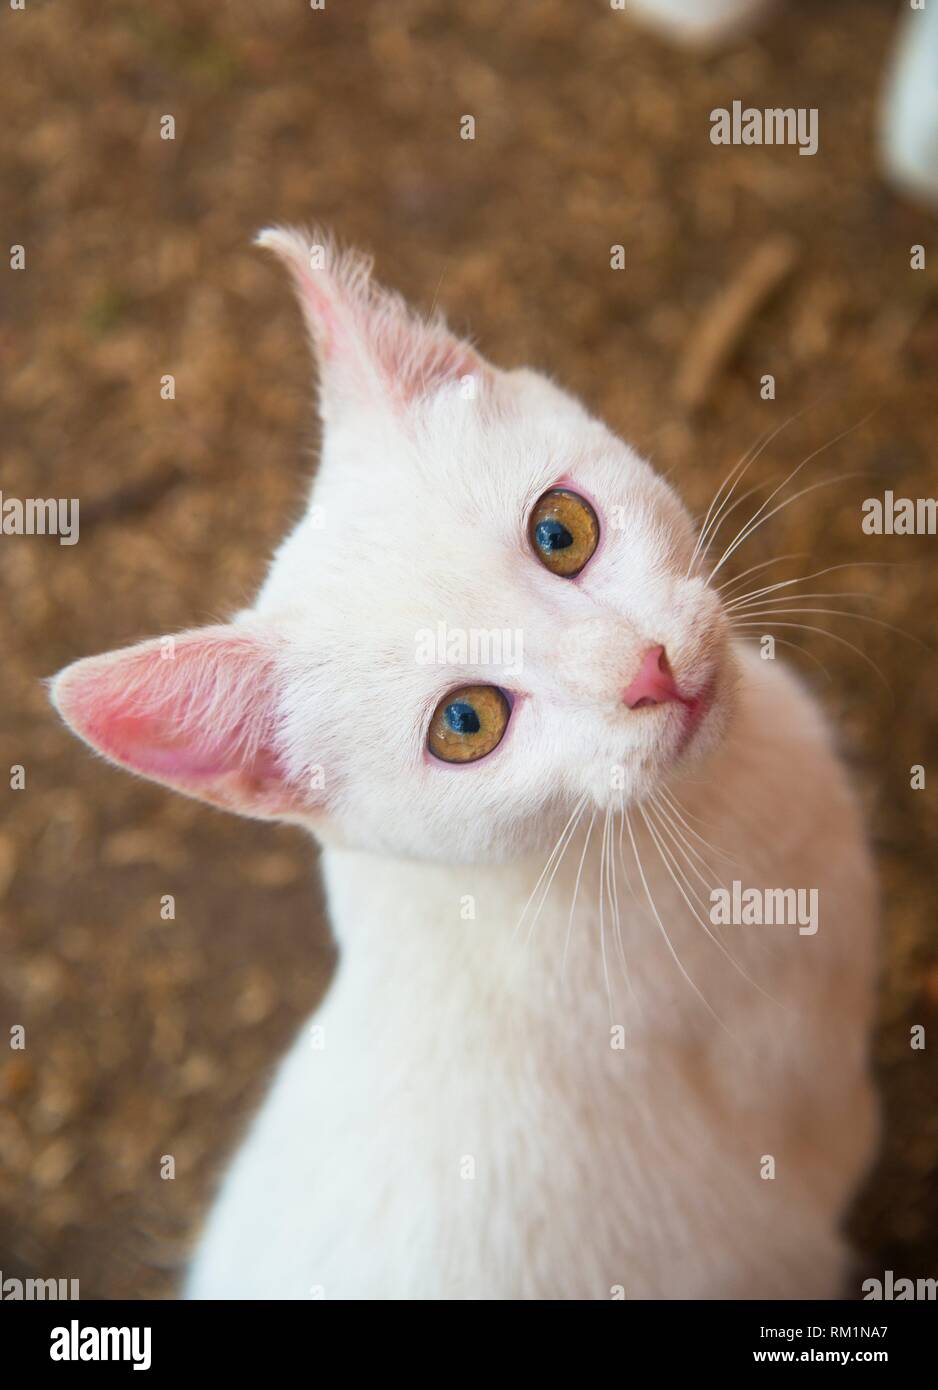 Adorable gatito blanco mirando a la cámara. Foto de stock